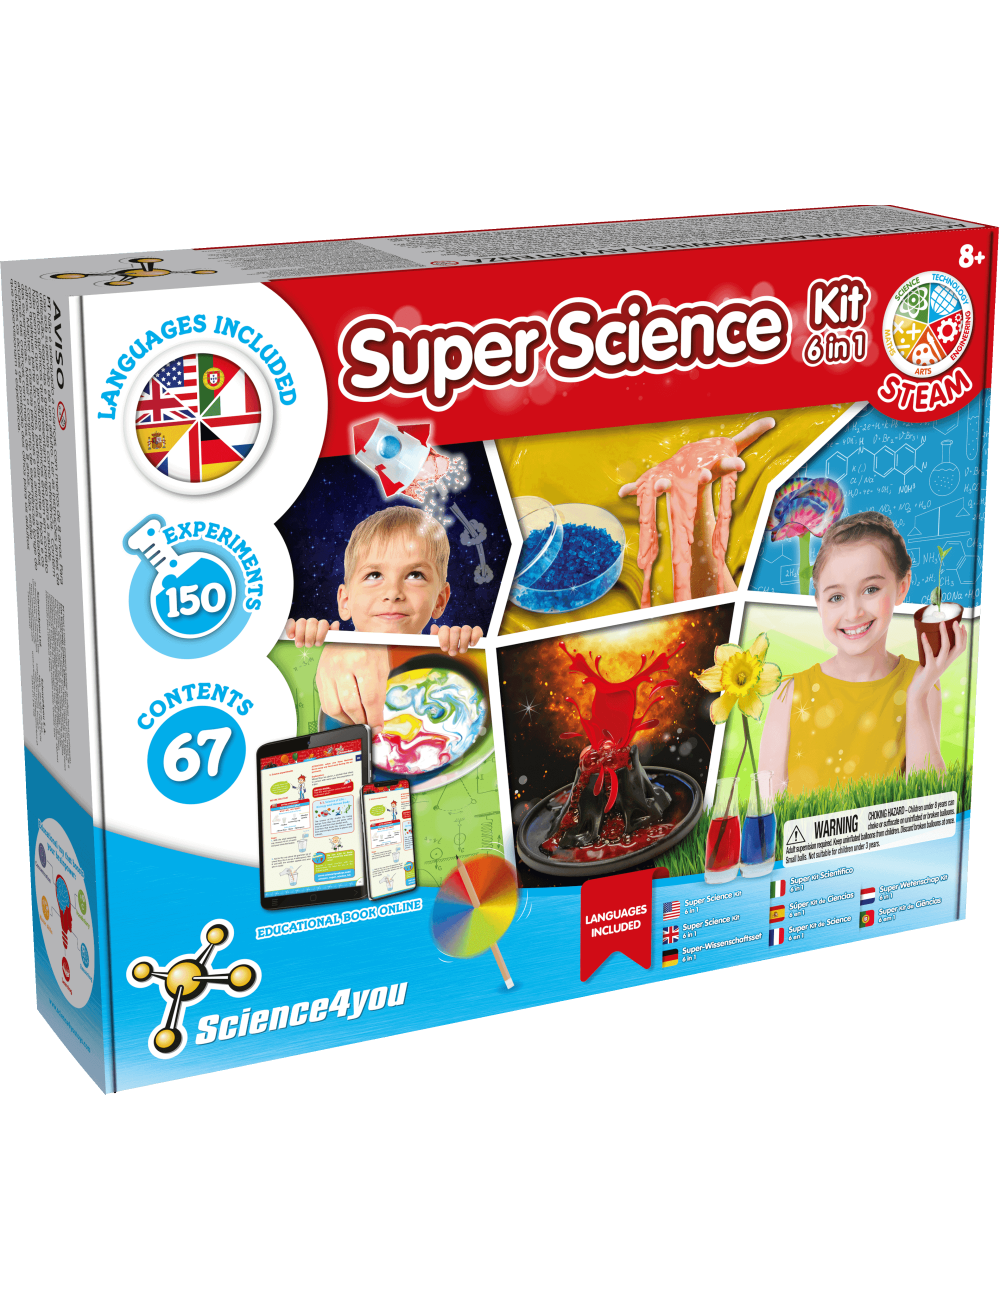 Les empreintes, activités scientifiques pour les enfants.